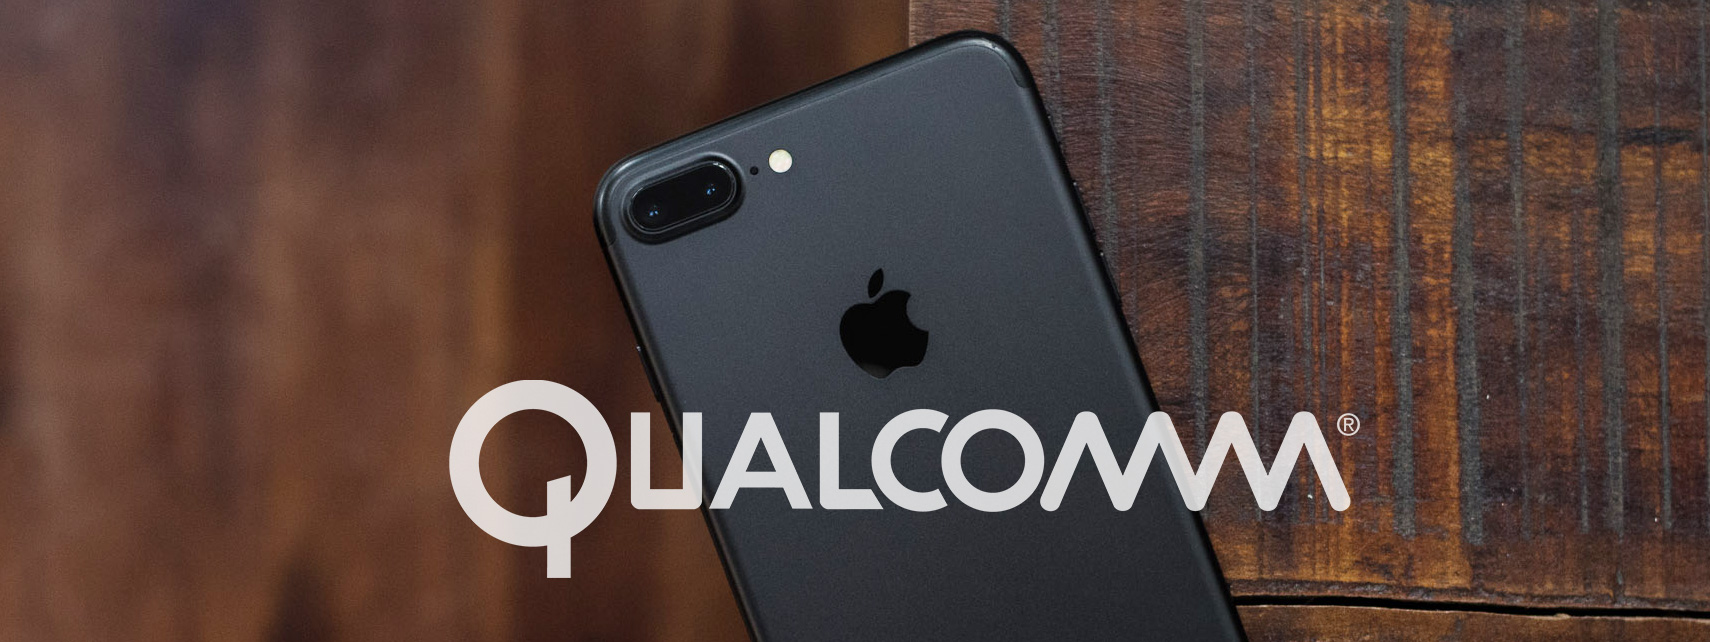 Apple và Ủy ban thương mại Mỹ kiện Qualcomm vì tính phí bản quyền quá cao, Apple đòi 1 tỉ USD